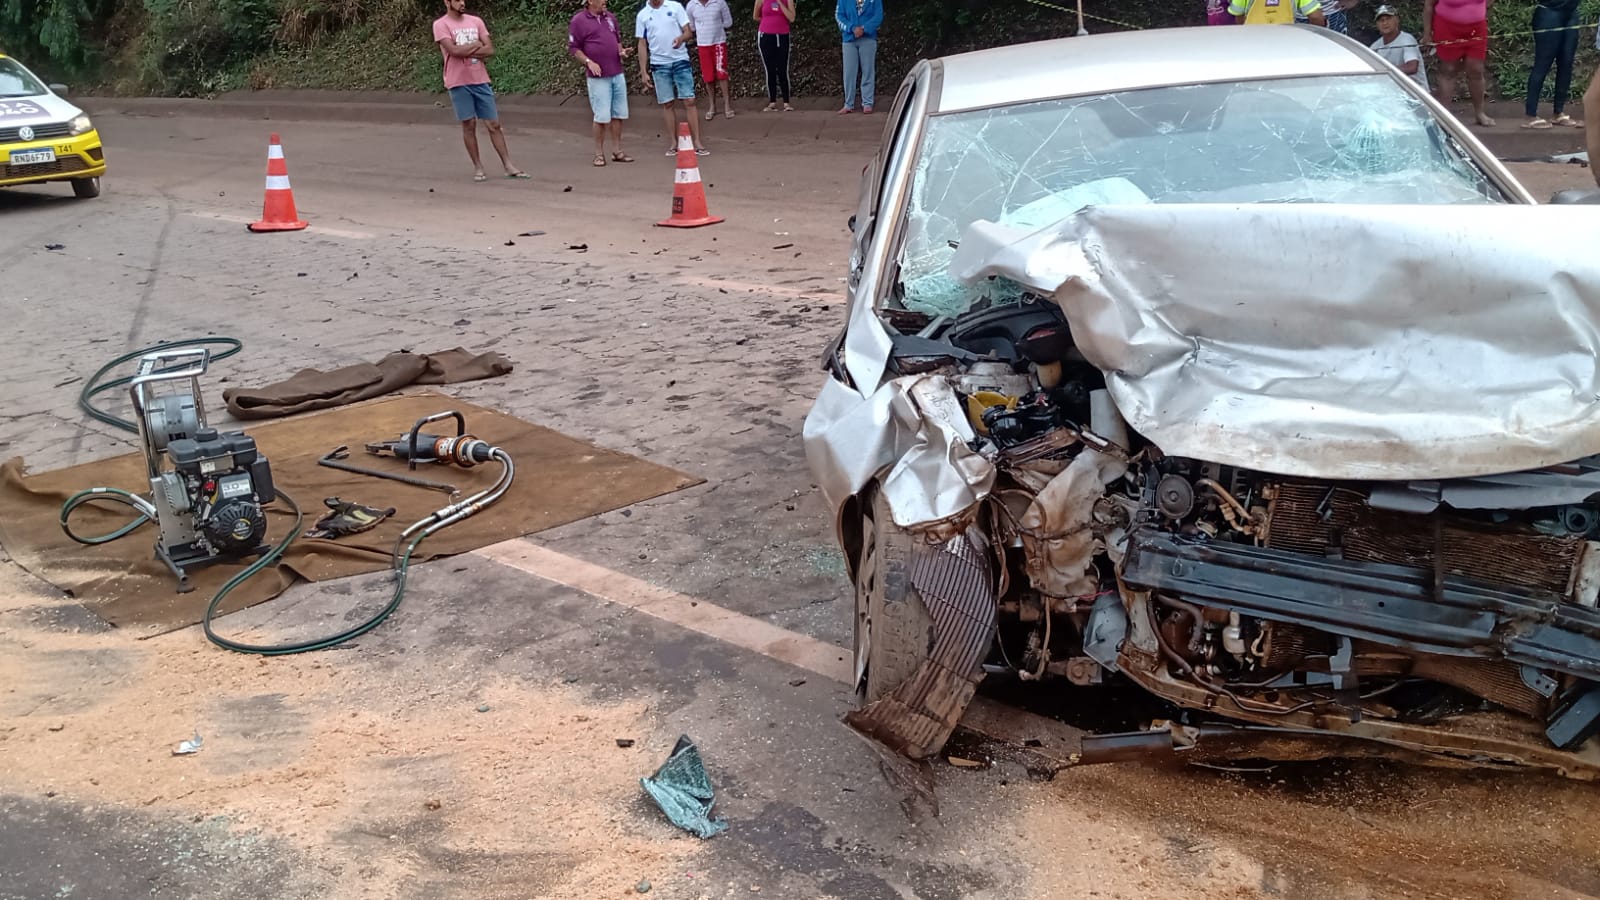 Quatro pessoas ficam feridas após batida entre carros na BR-040, em Congonhas - Foto: Divulgação/CBMMG